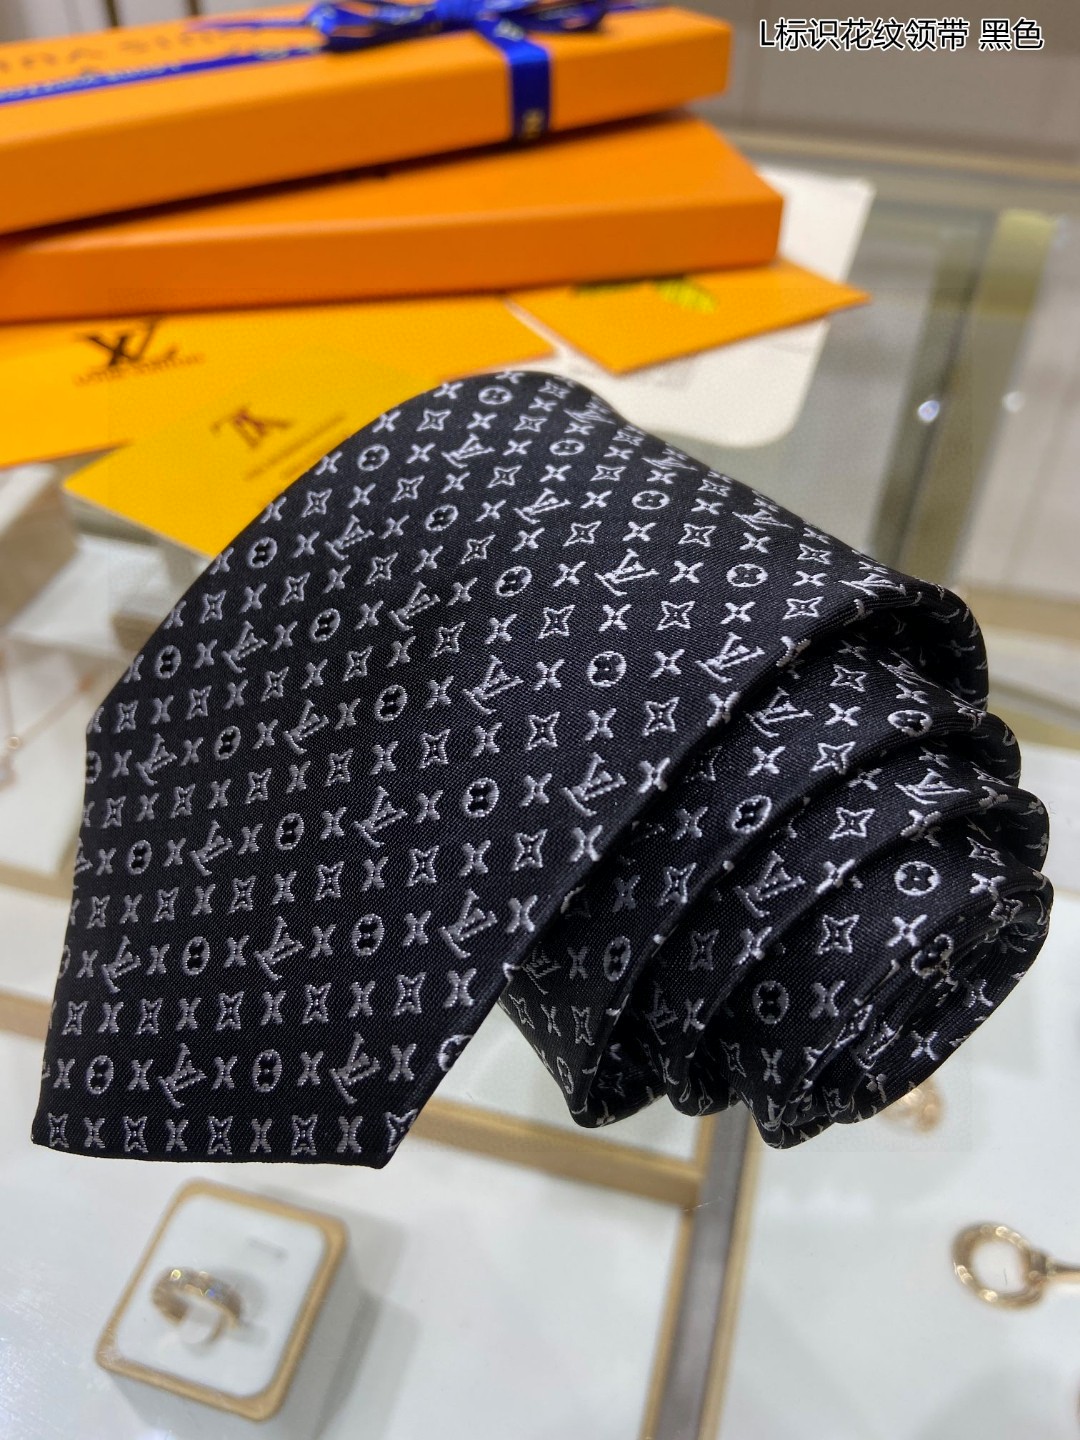 男士领带系列L标识花纹领带稀有Mon